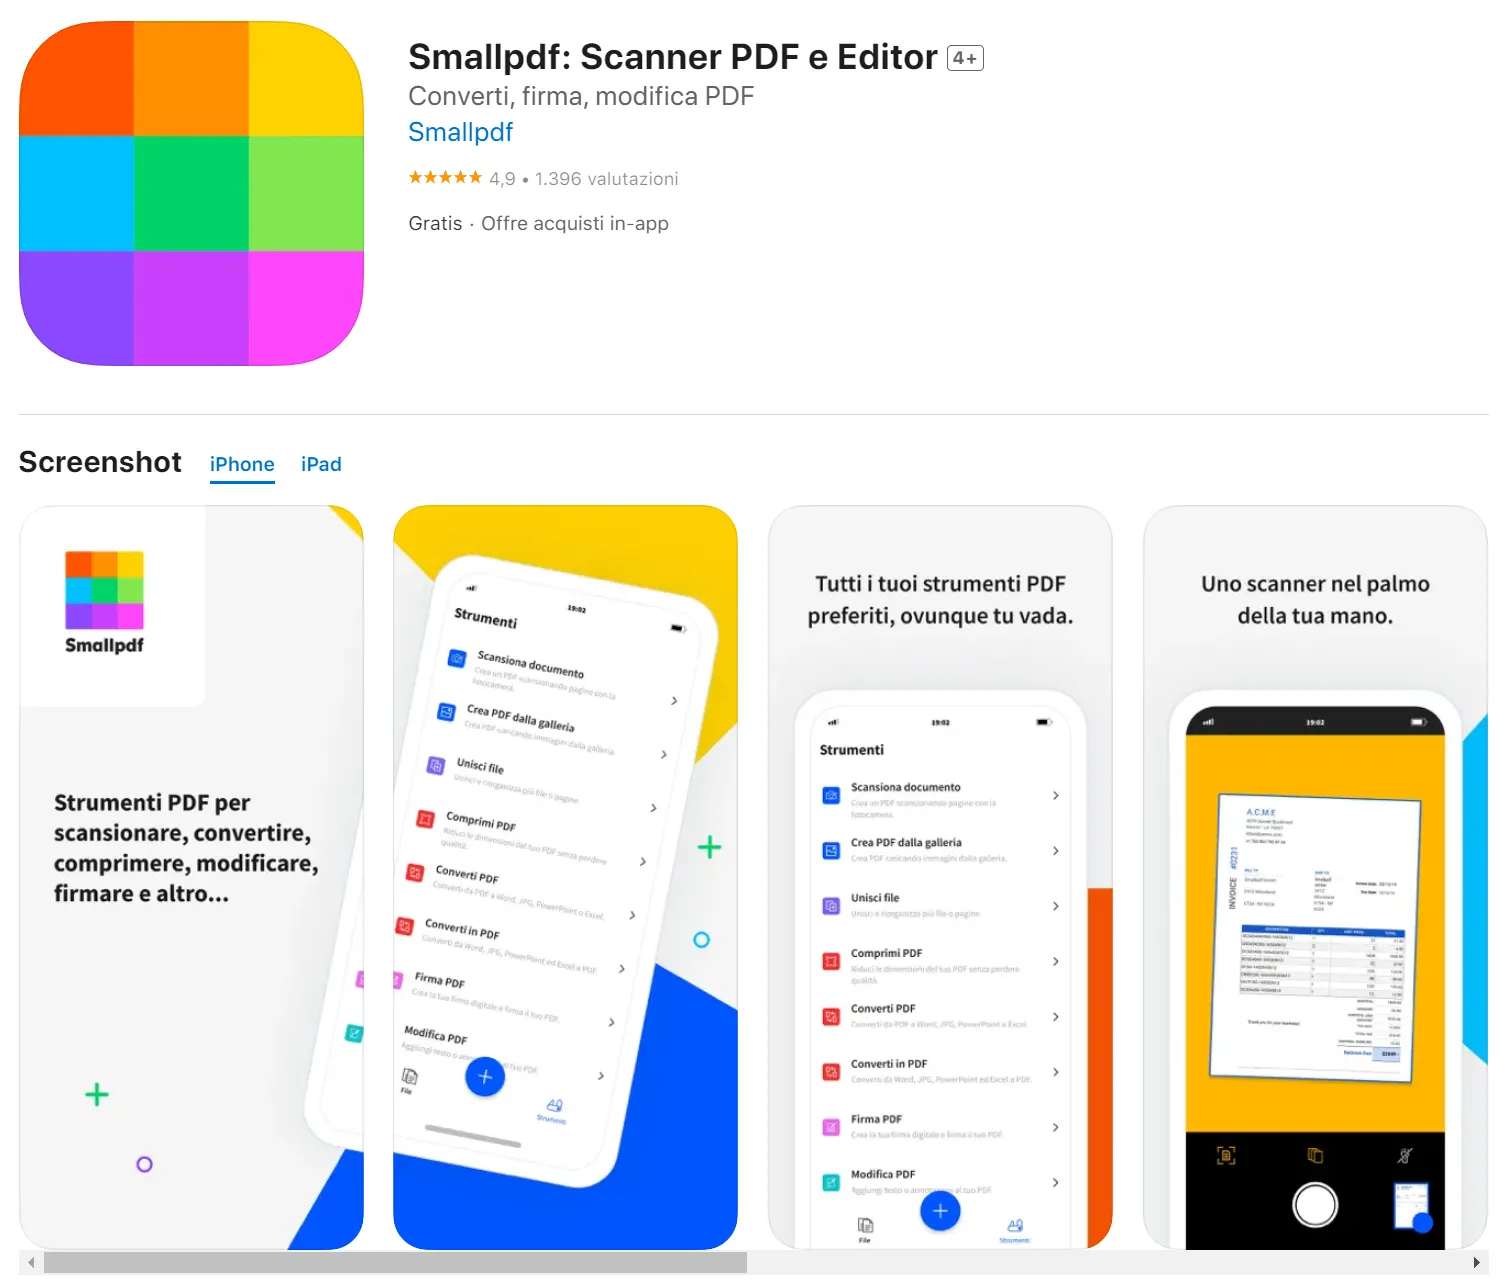 smallpdf: migliori app per evidenziare i PDF su iPad